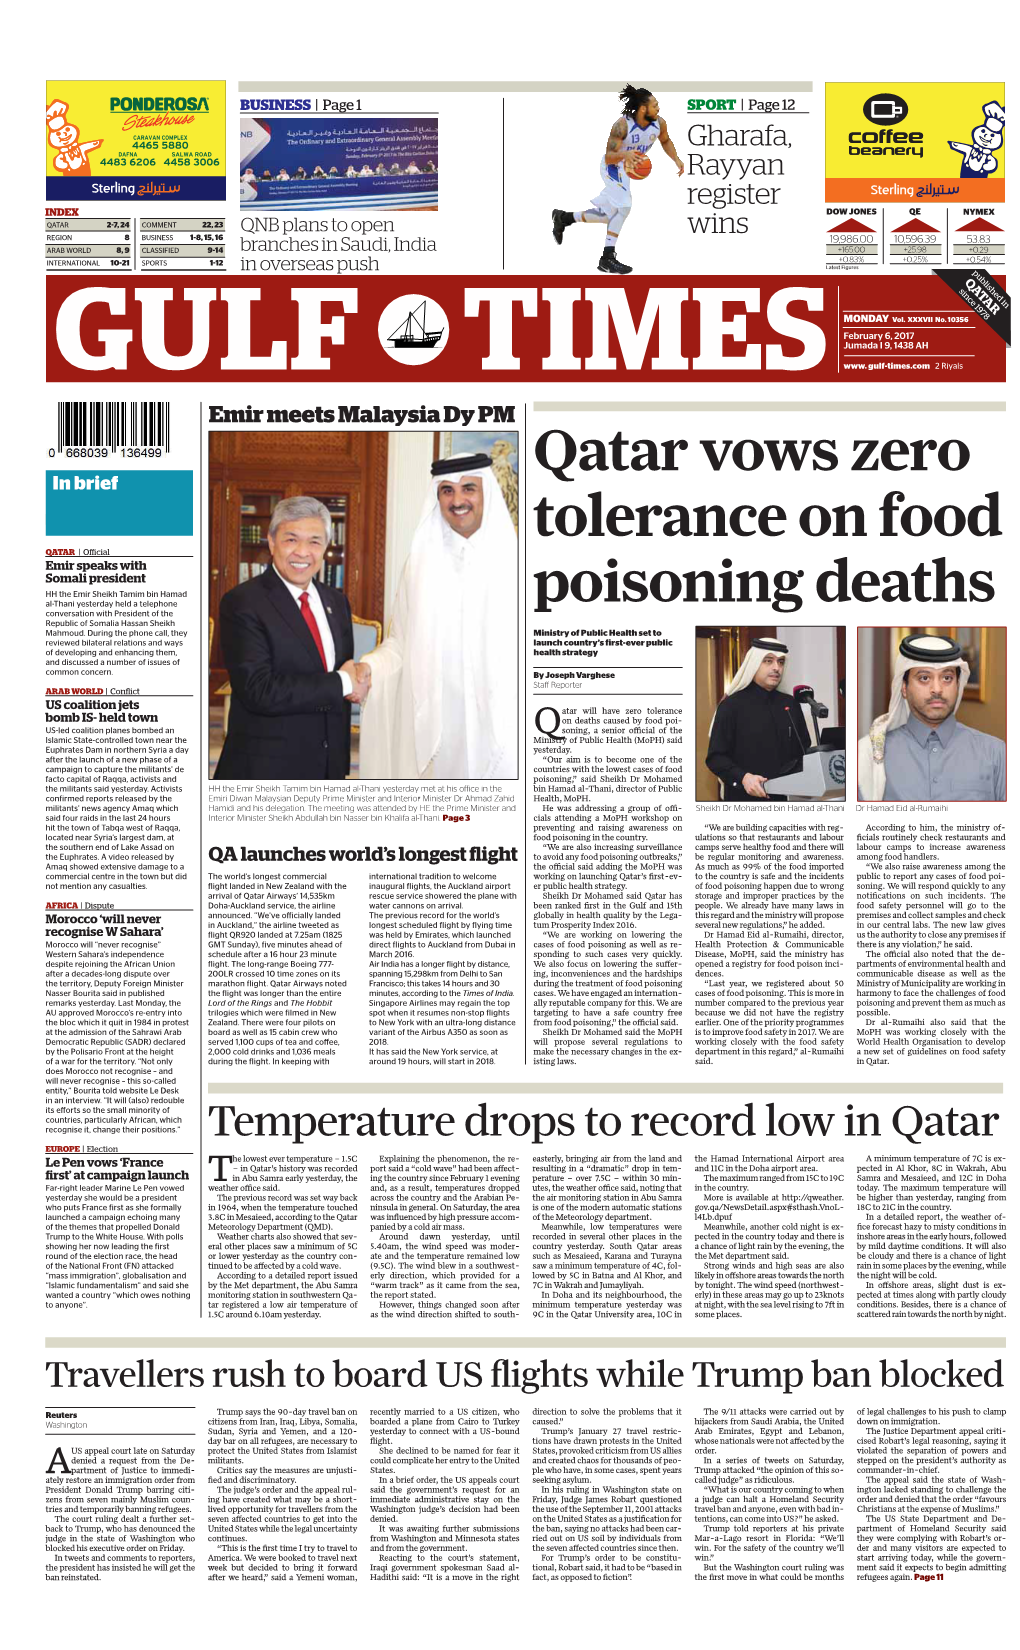 Qatar Vows Zero Tolerance on Food Poisoning Deaths